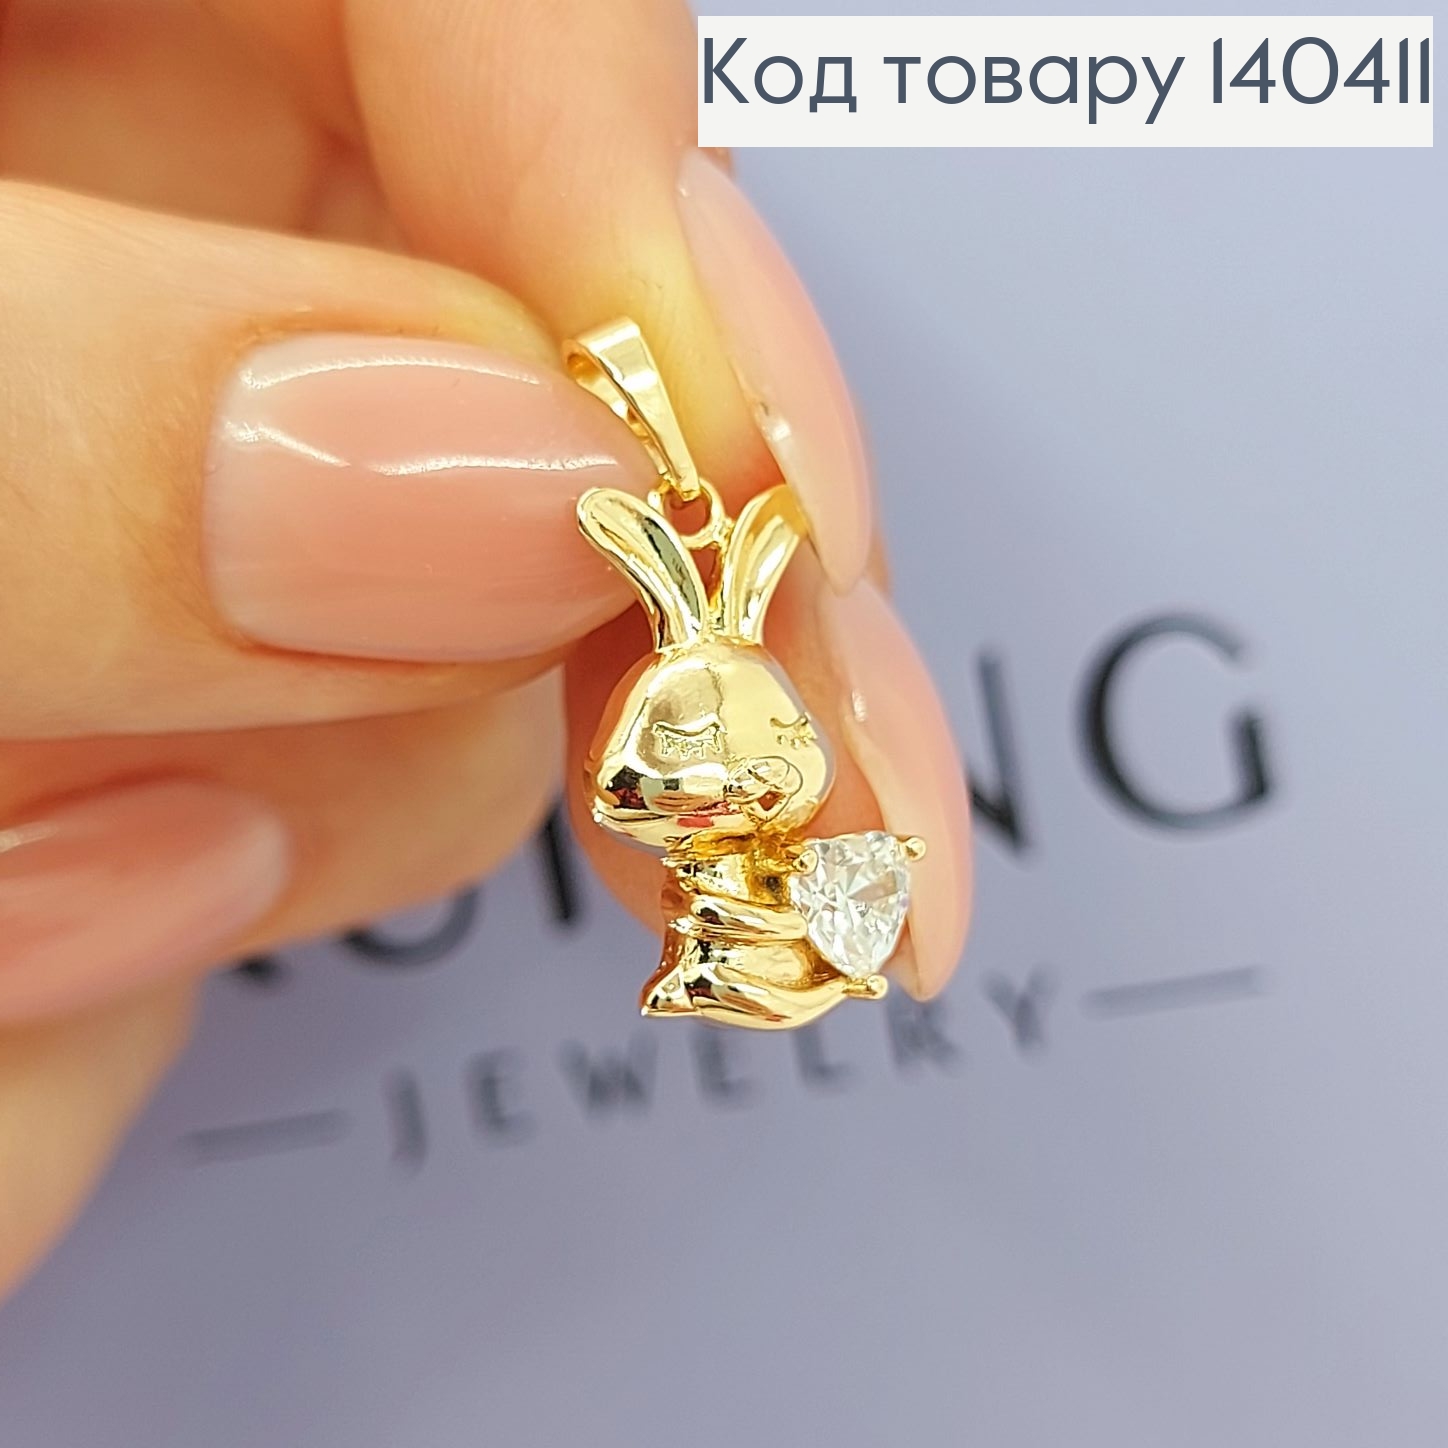 Кулон Влюбленный зайка с камнем сердечком Xuping 18К 140411 фото 3